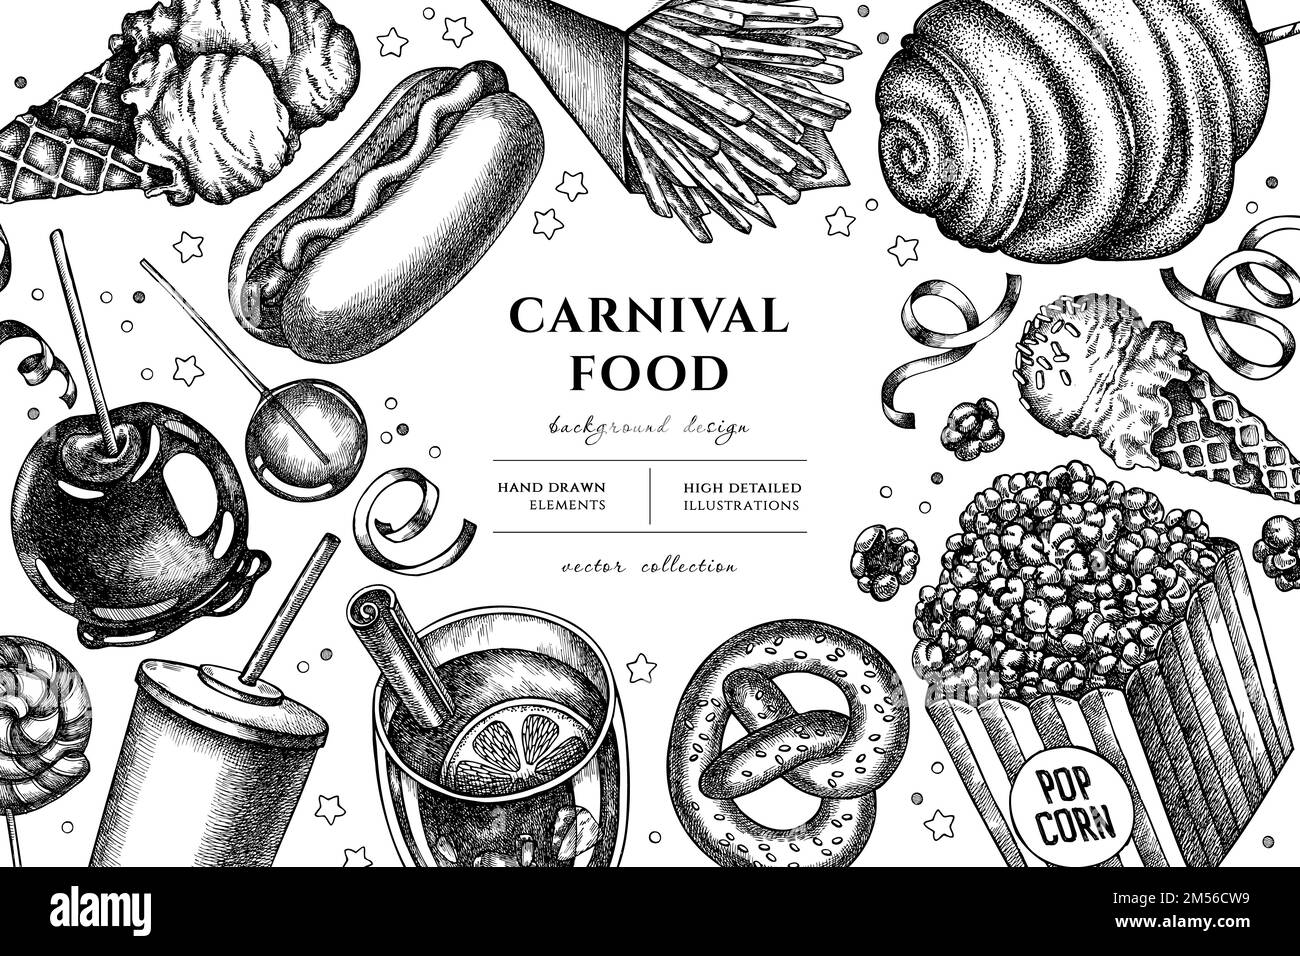 Dessin d'illustration de Carnival Food dessiné à la main. Arrière-plan avec frites, bretzel, pop-corn, limonade, hot dog, vin chaud, pomme caramel Illustration de Vecteur